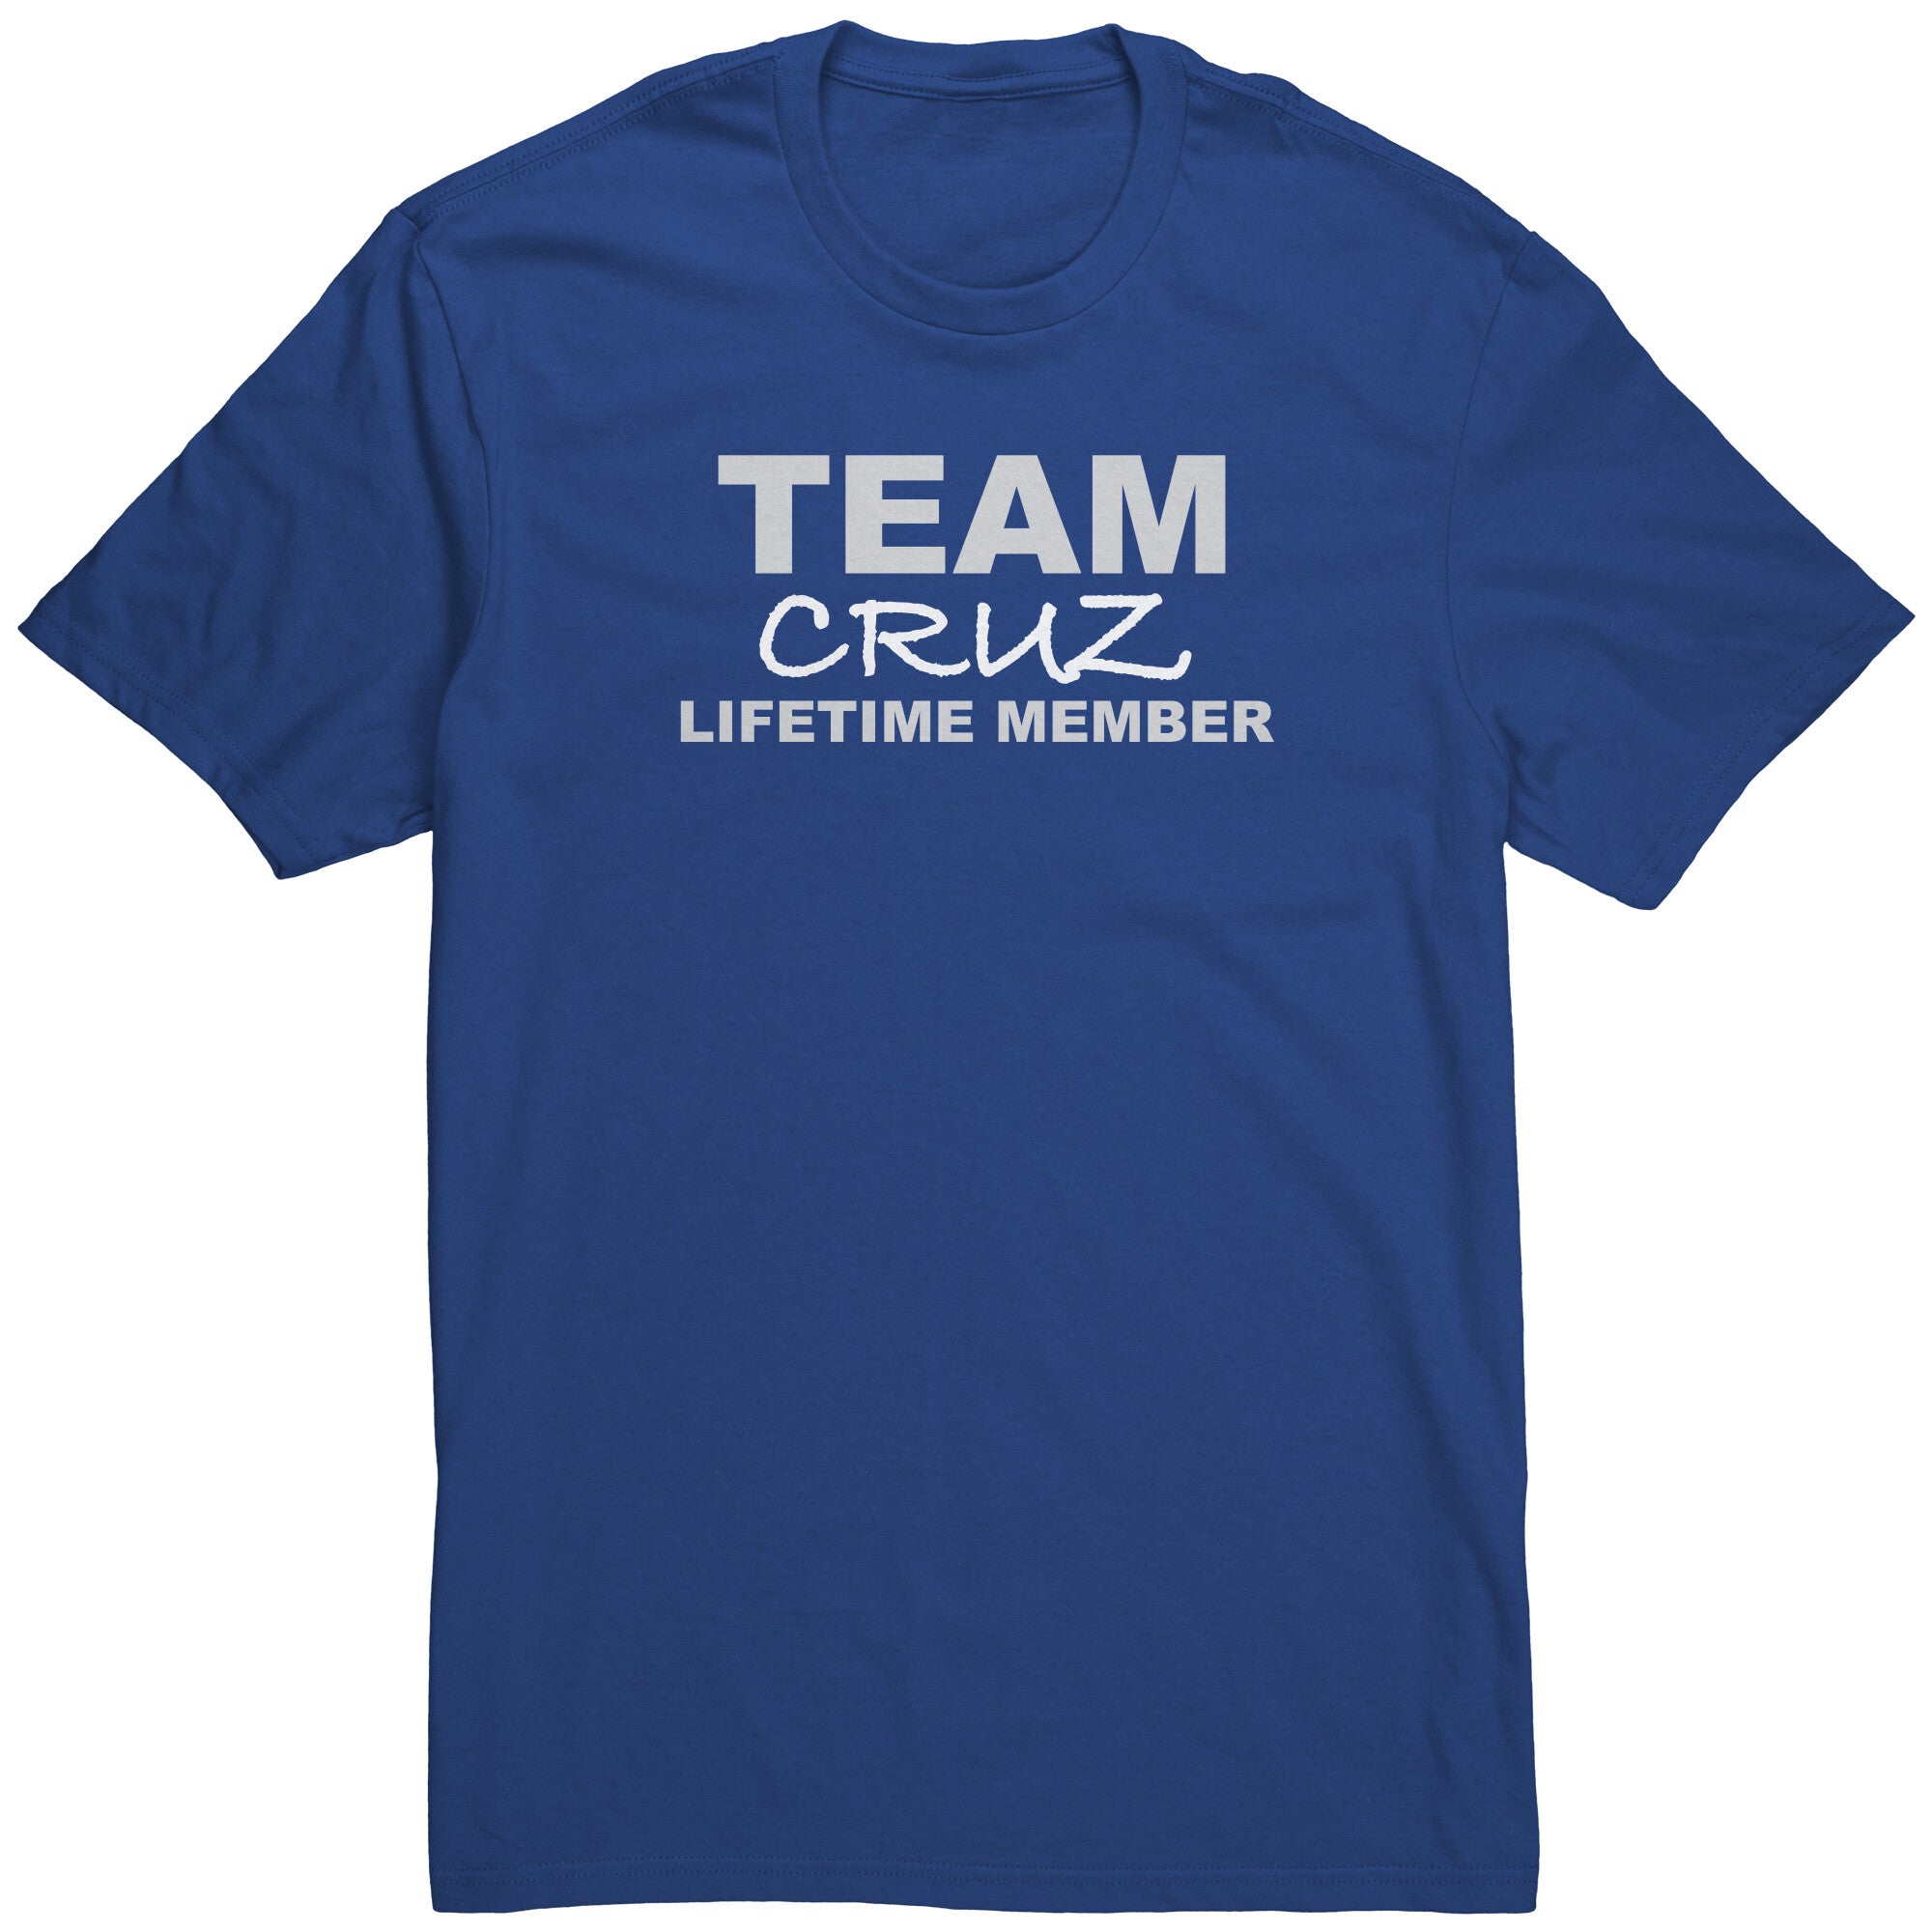 Team Cruz - Lifetime Member (Shirt)